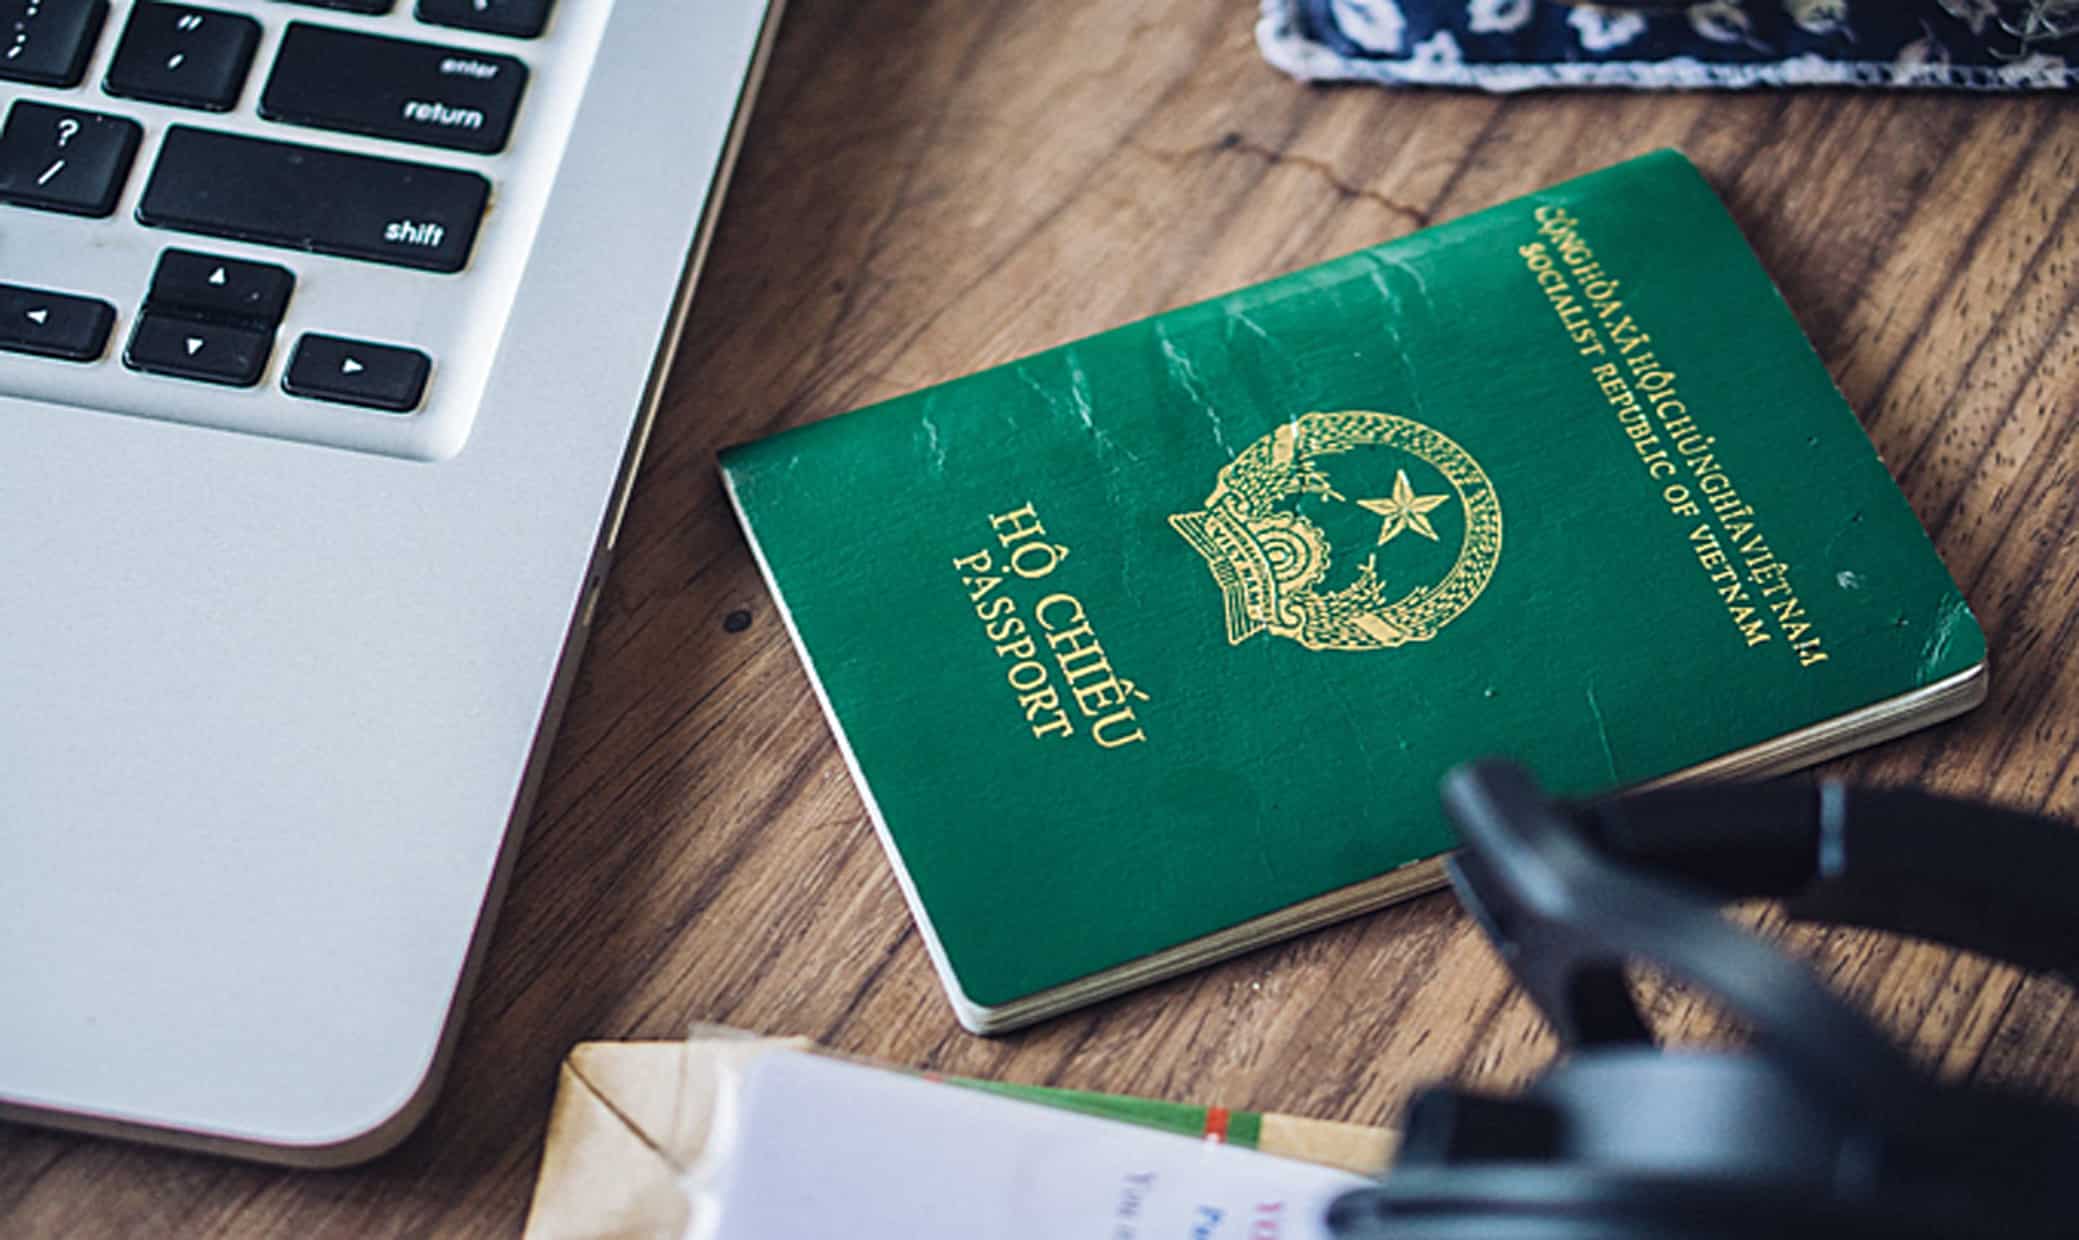 Kinh nghiệm chuẩn bị giấy tờ visa Mỹ - đi máy bay qua Mỹ